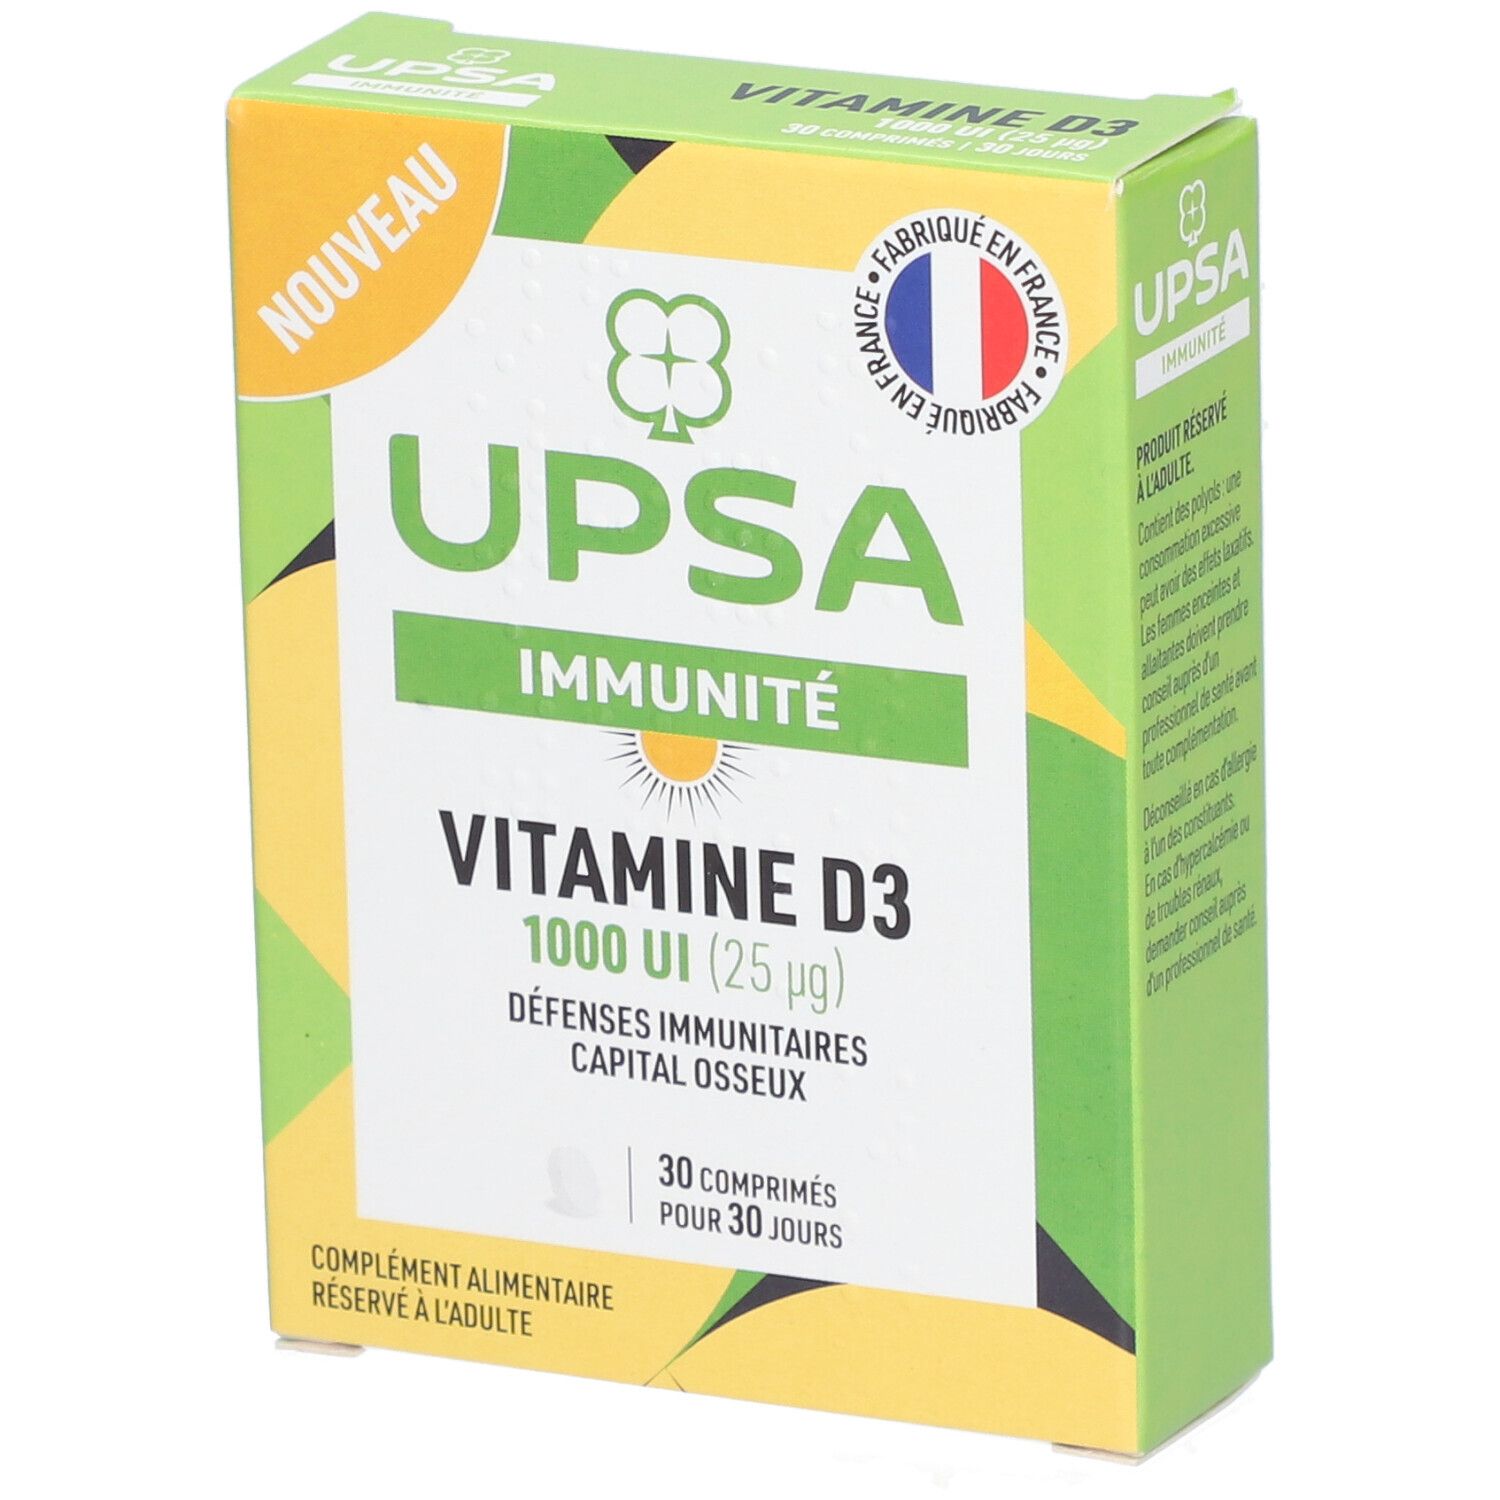 Vitamine D3 Upsa 1000 UI - 30 comprimés - Adultes - Complément alimentaire - Défenses immunitaires e